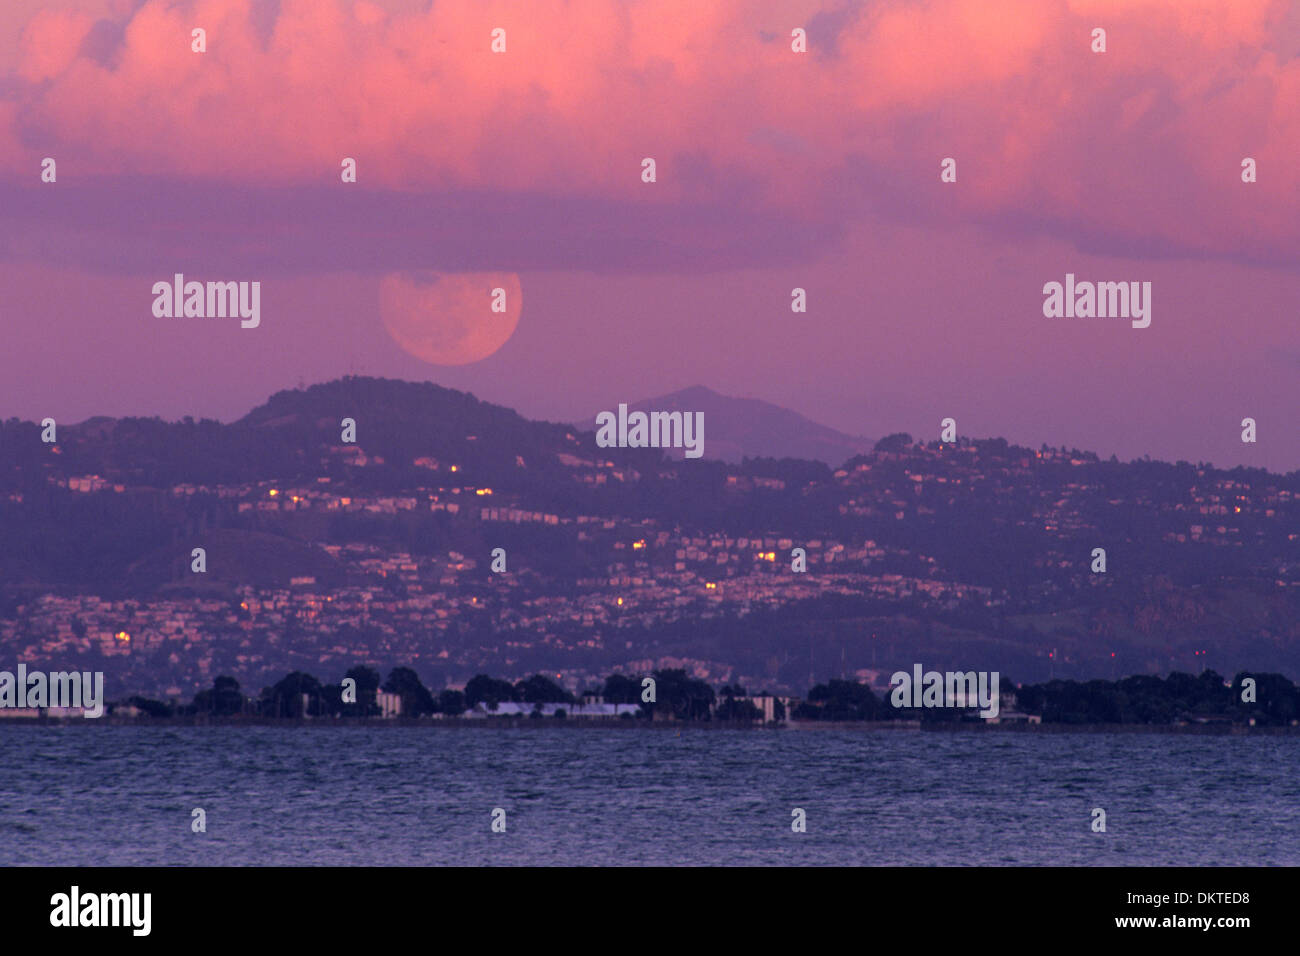 La pleine lune au coucher du soleil sur l'Oakland Hills et Mount Diablo, vu de Rincon, San Francisco, Californie Banque D'Images